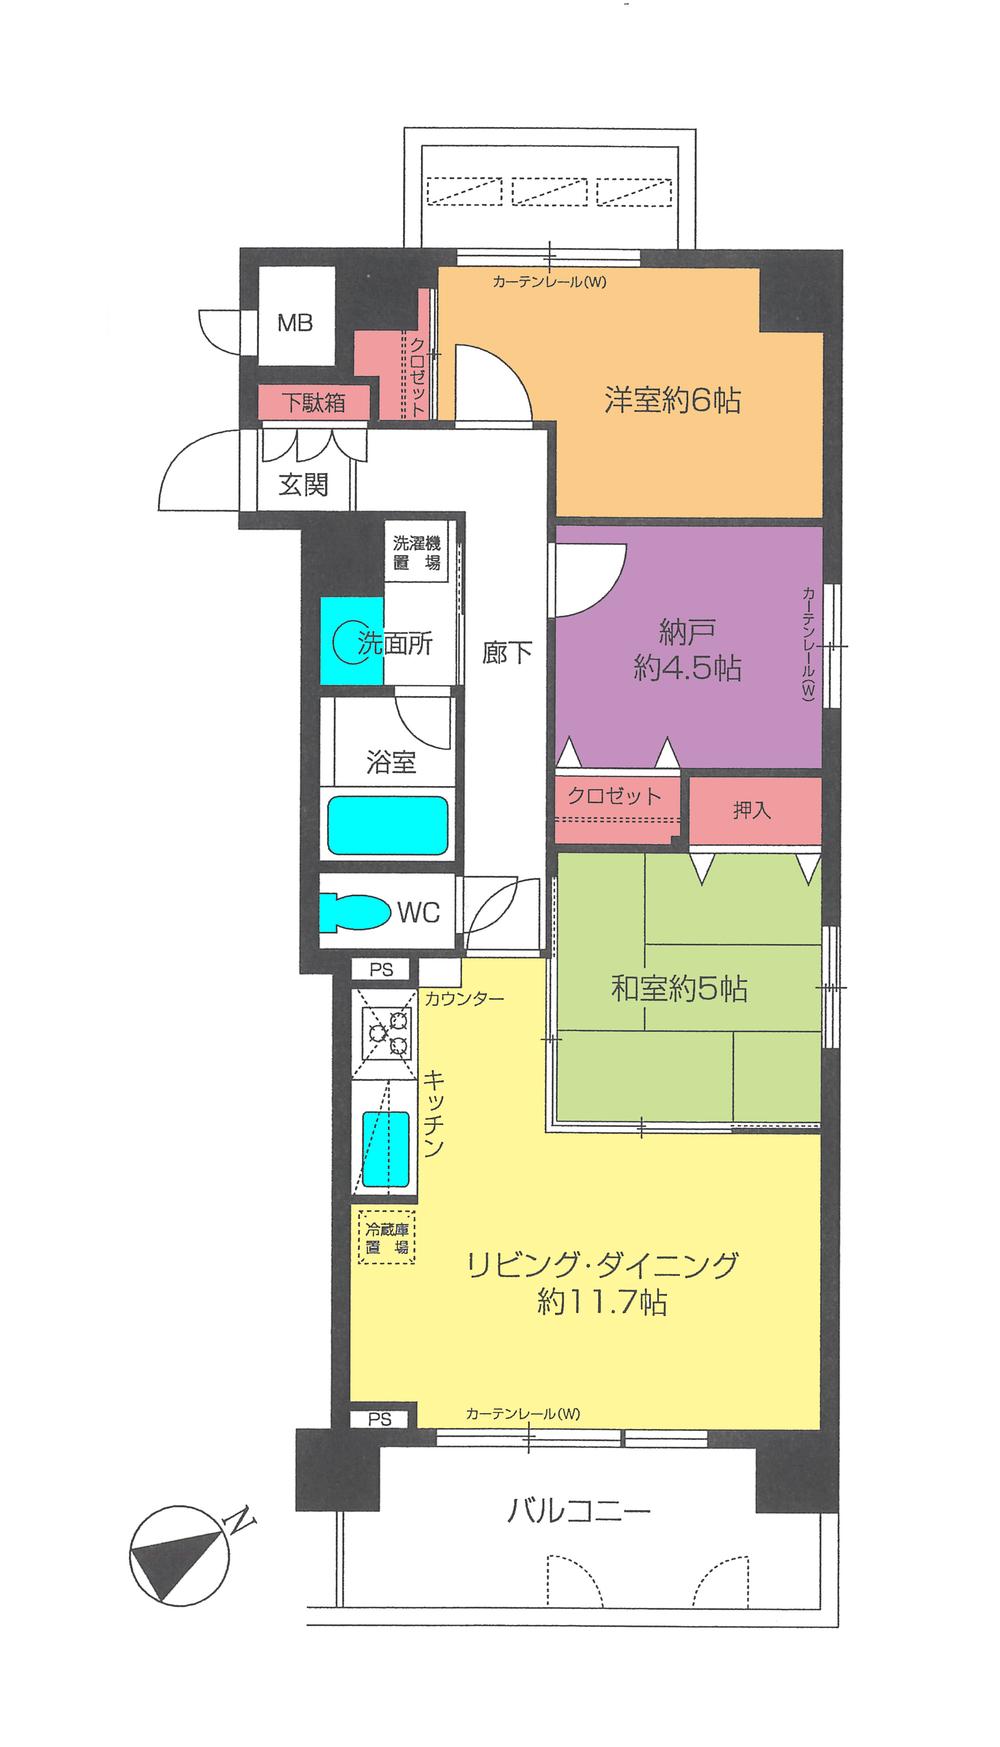 Floor plan. 2LDK + S (storeroom), Price 18.5 million yen, Occupied area 63.87 sq m , Balcony area 12.36 sq m floor plan